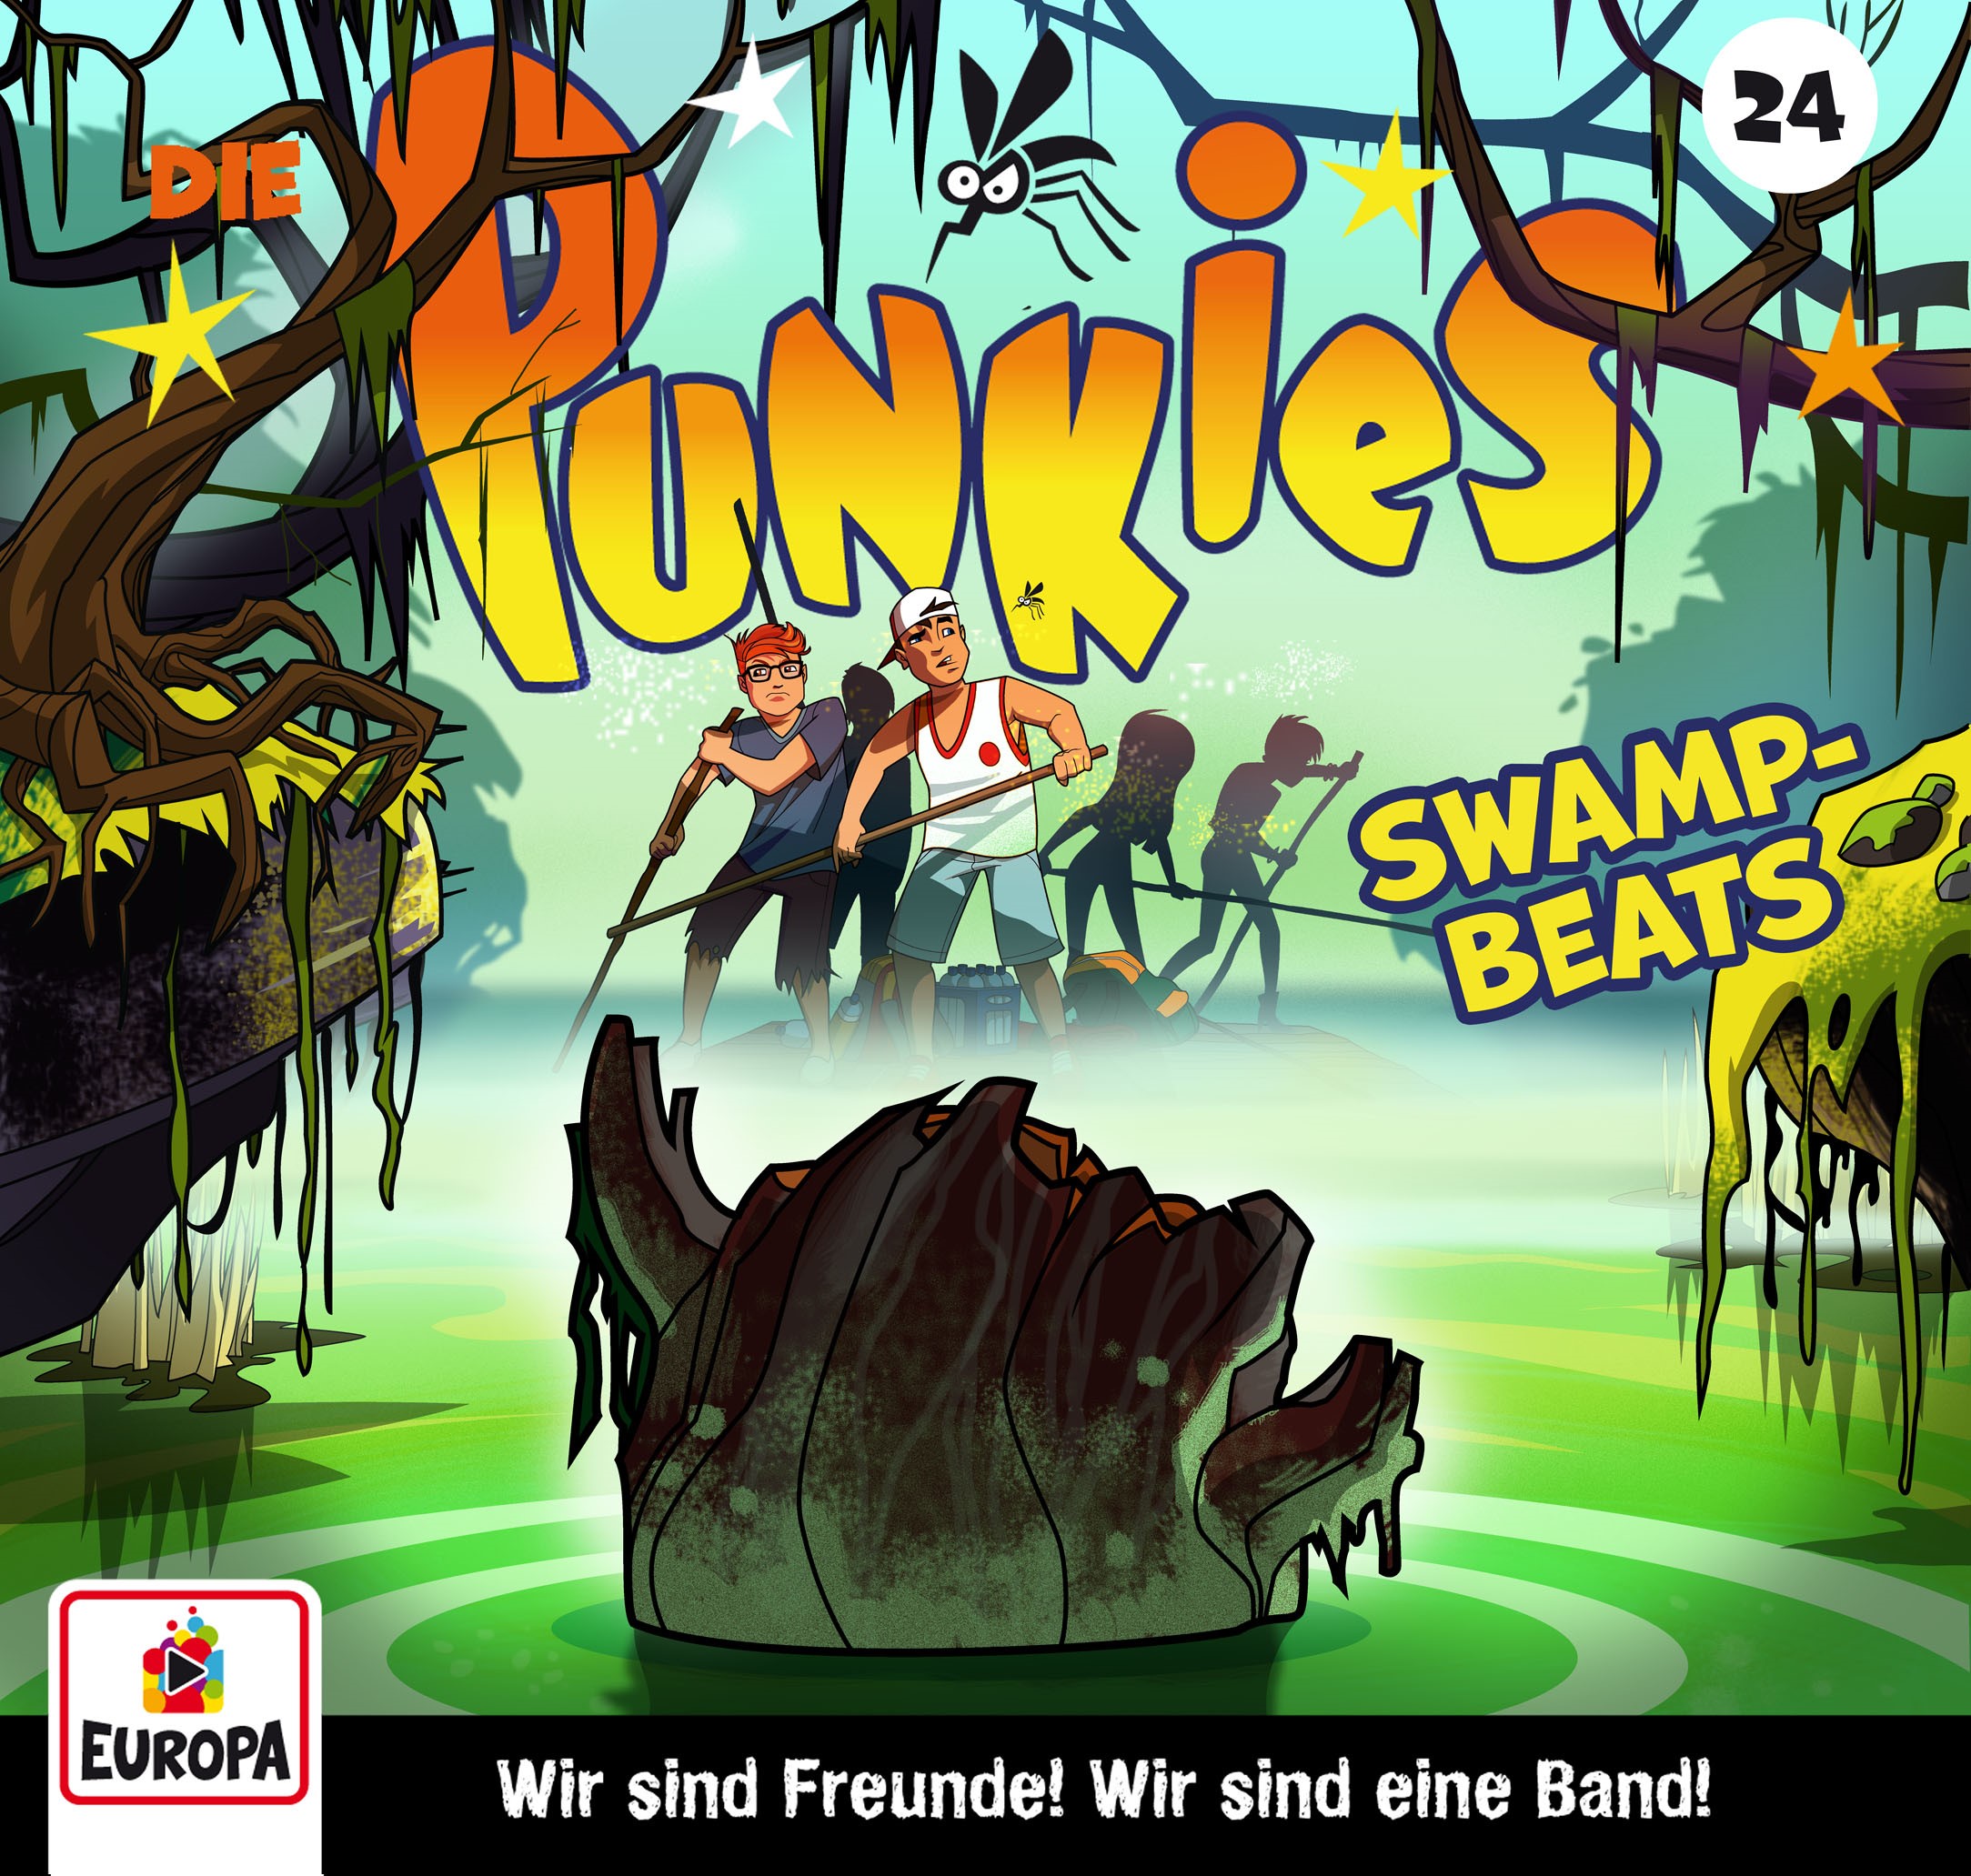 Die Punkies : Swamp Beats!